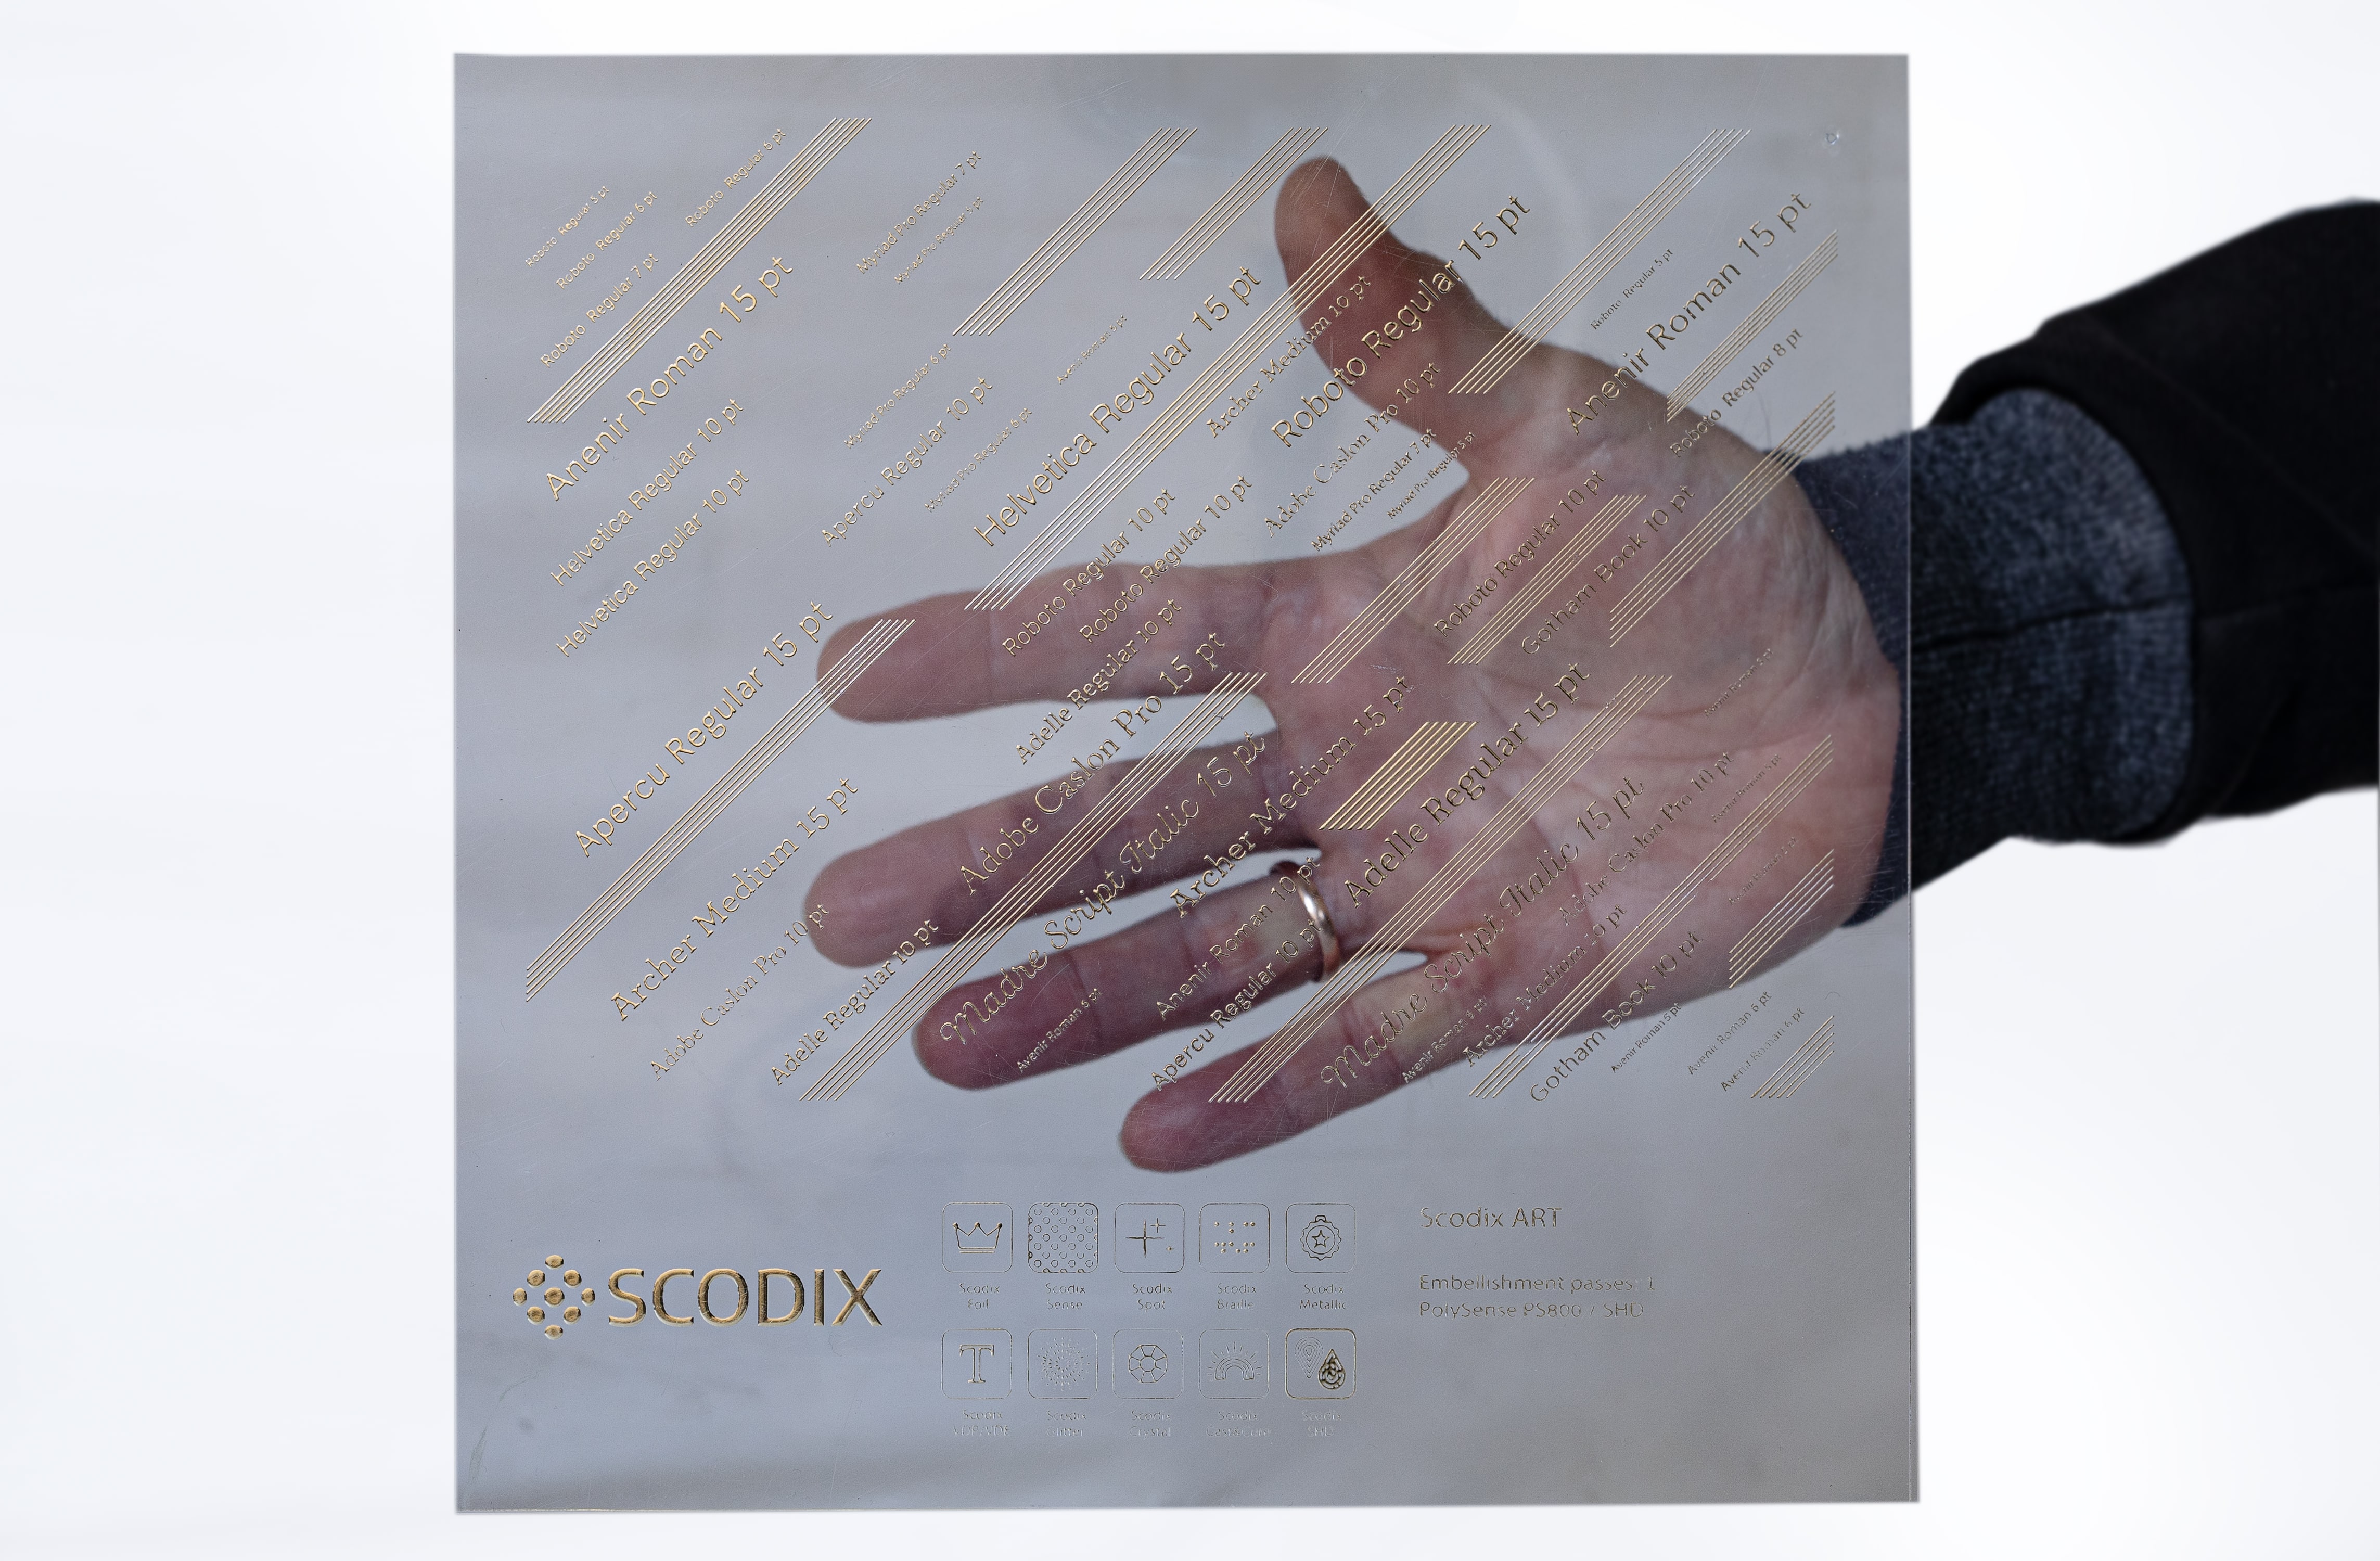 Scodix Transparent ist eine von sechs neuen Anwendungen, die Scodix auf den Markt gebracht hat. Die Druckmaschinen bieten nun 16 Veredelungsoptionen auf einer einzigen Plattform (Quelle: Scodix)